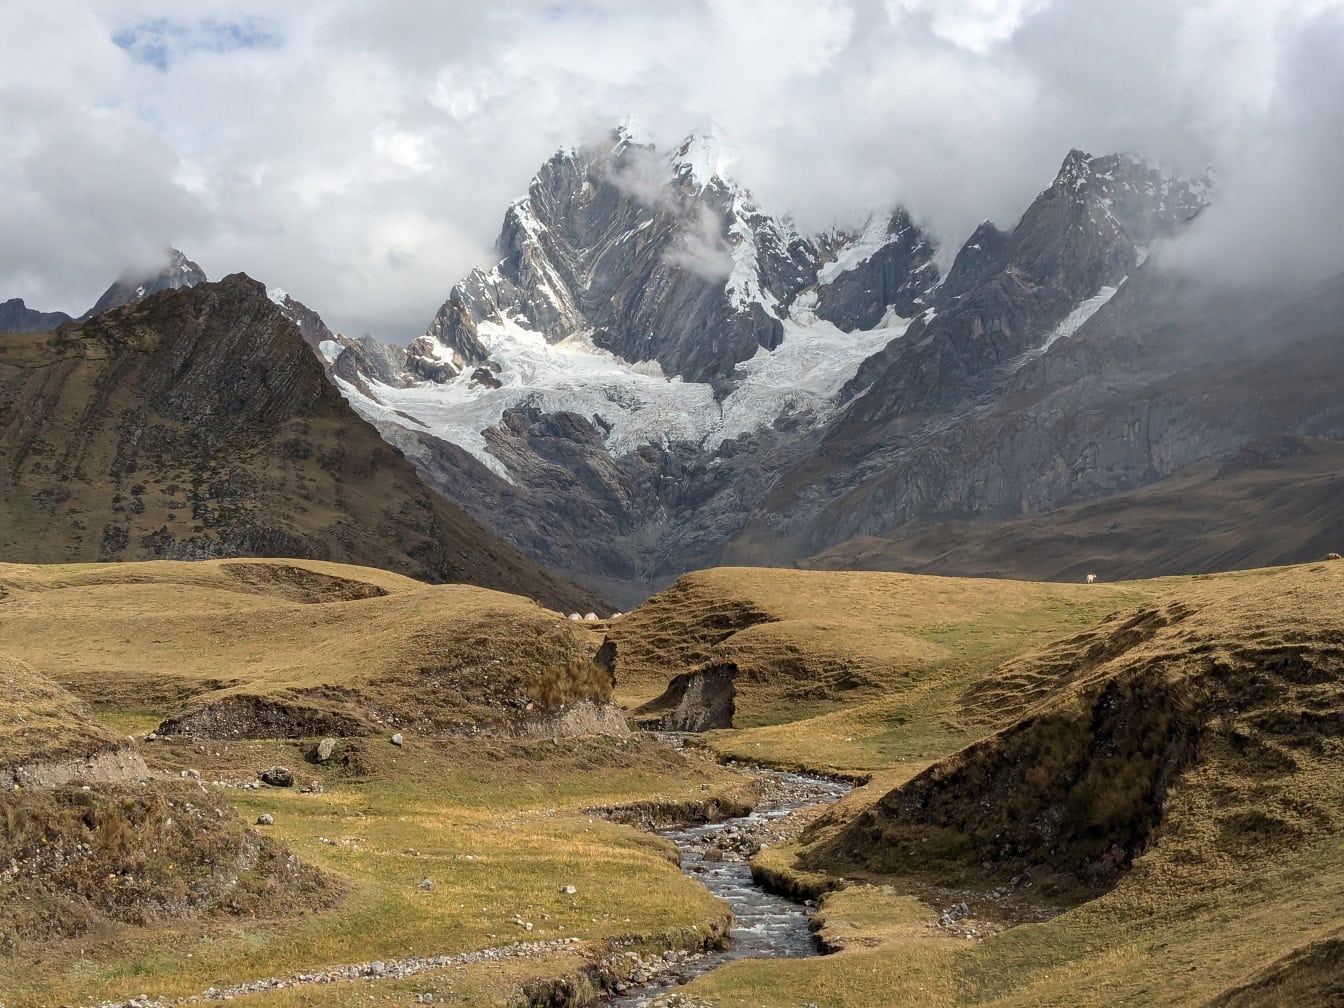 Horská řeka protékající údolím v pohoří Cordillera Huayhuash v peruánských Andách s horami v pozadí